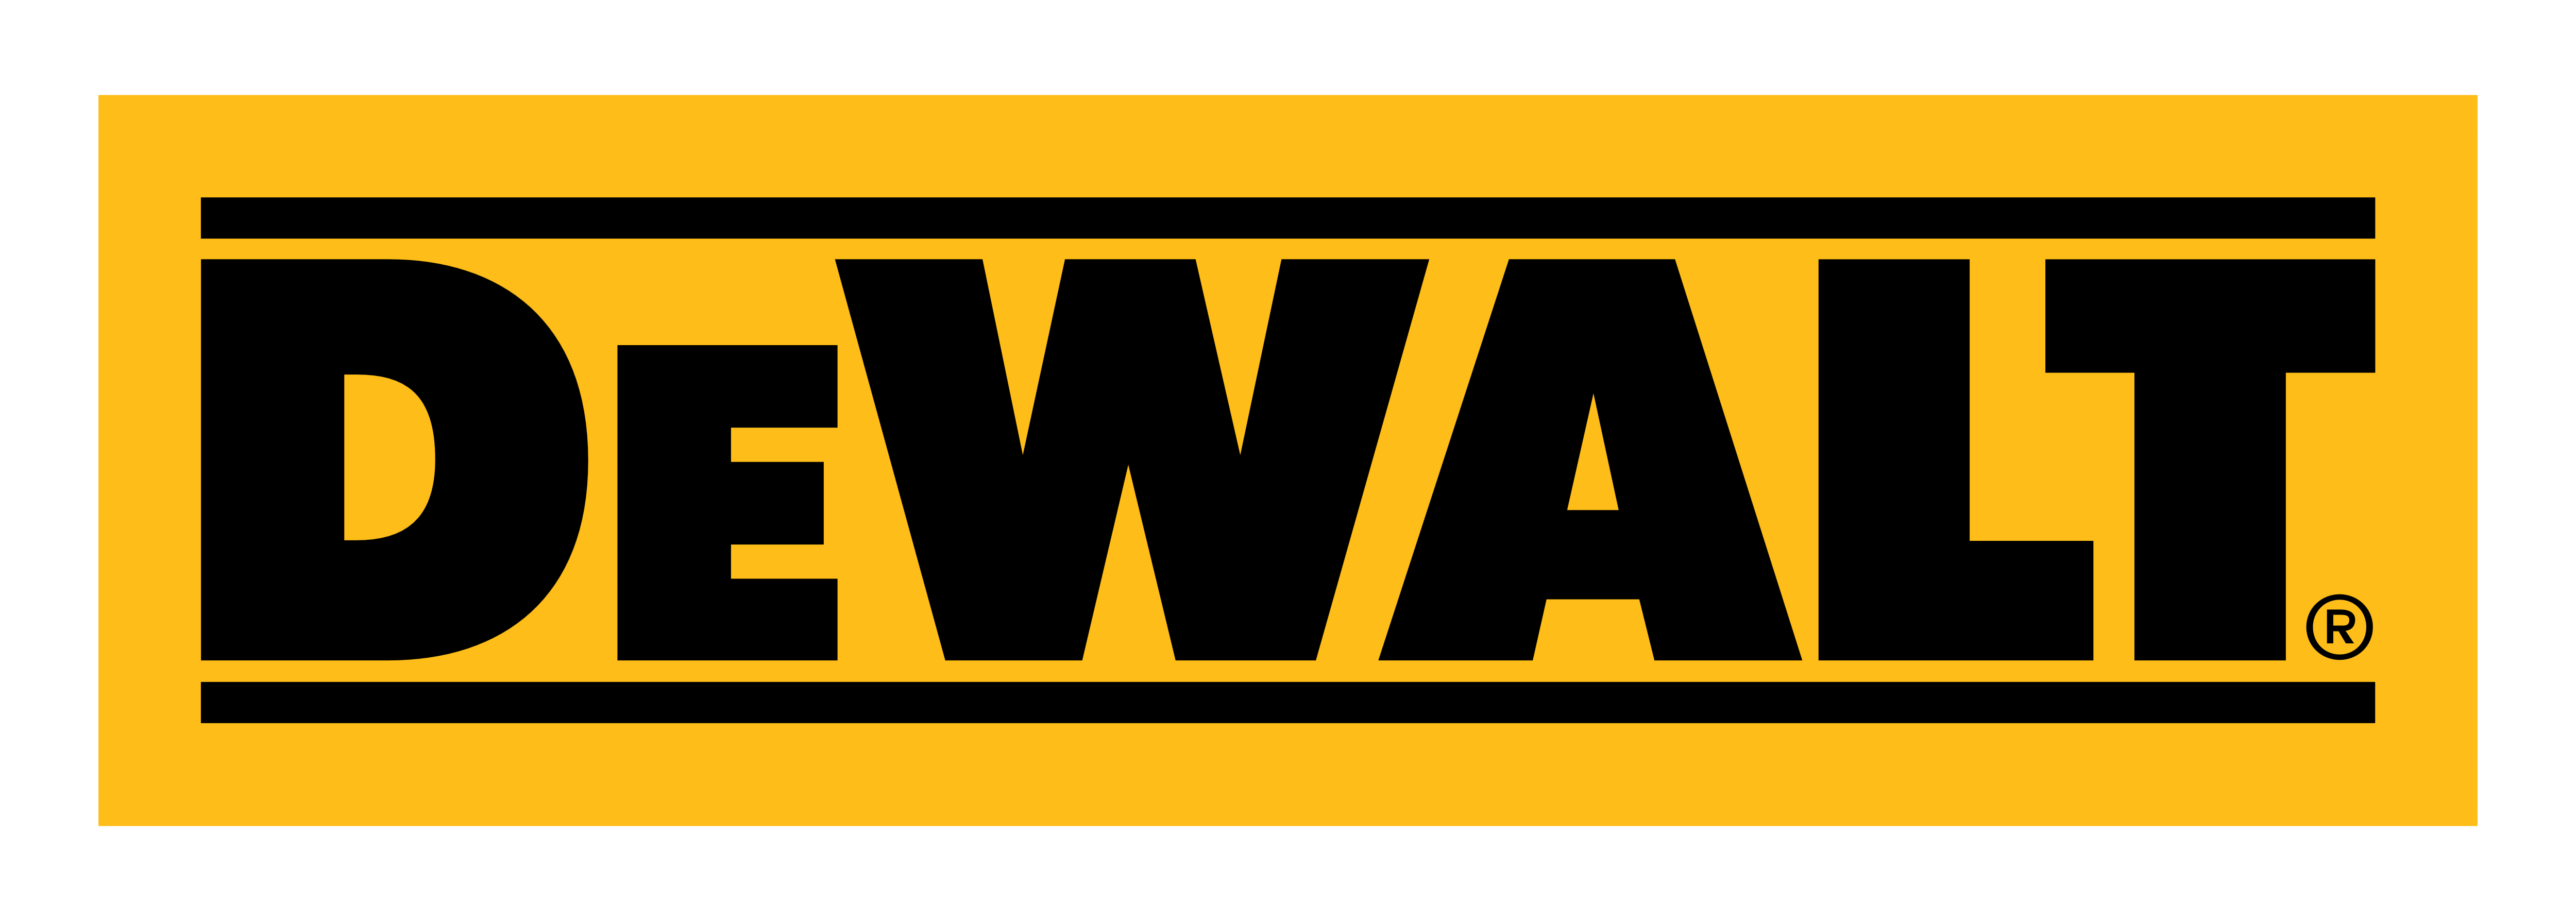 DeWalt_logo (1)